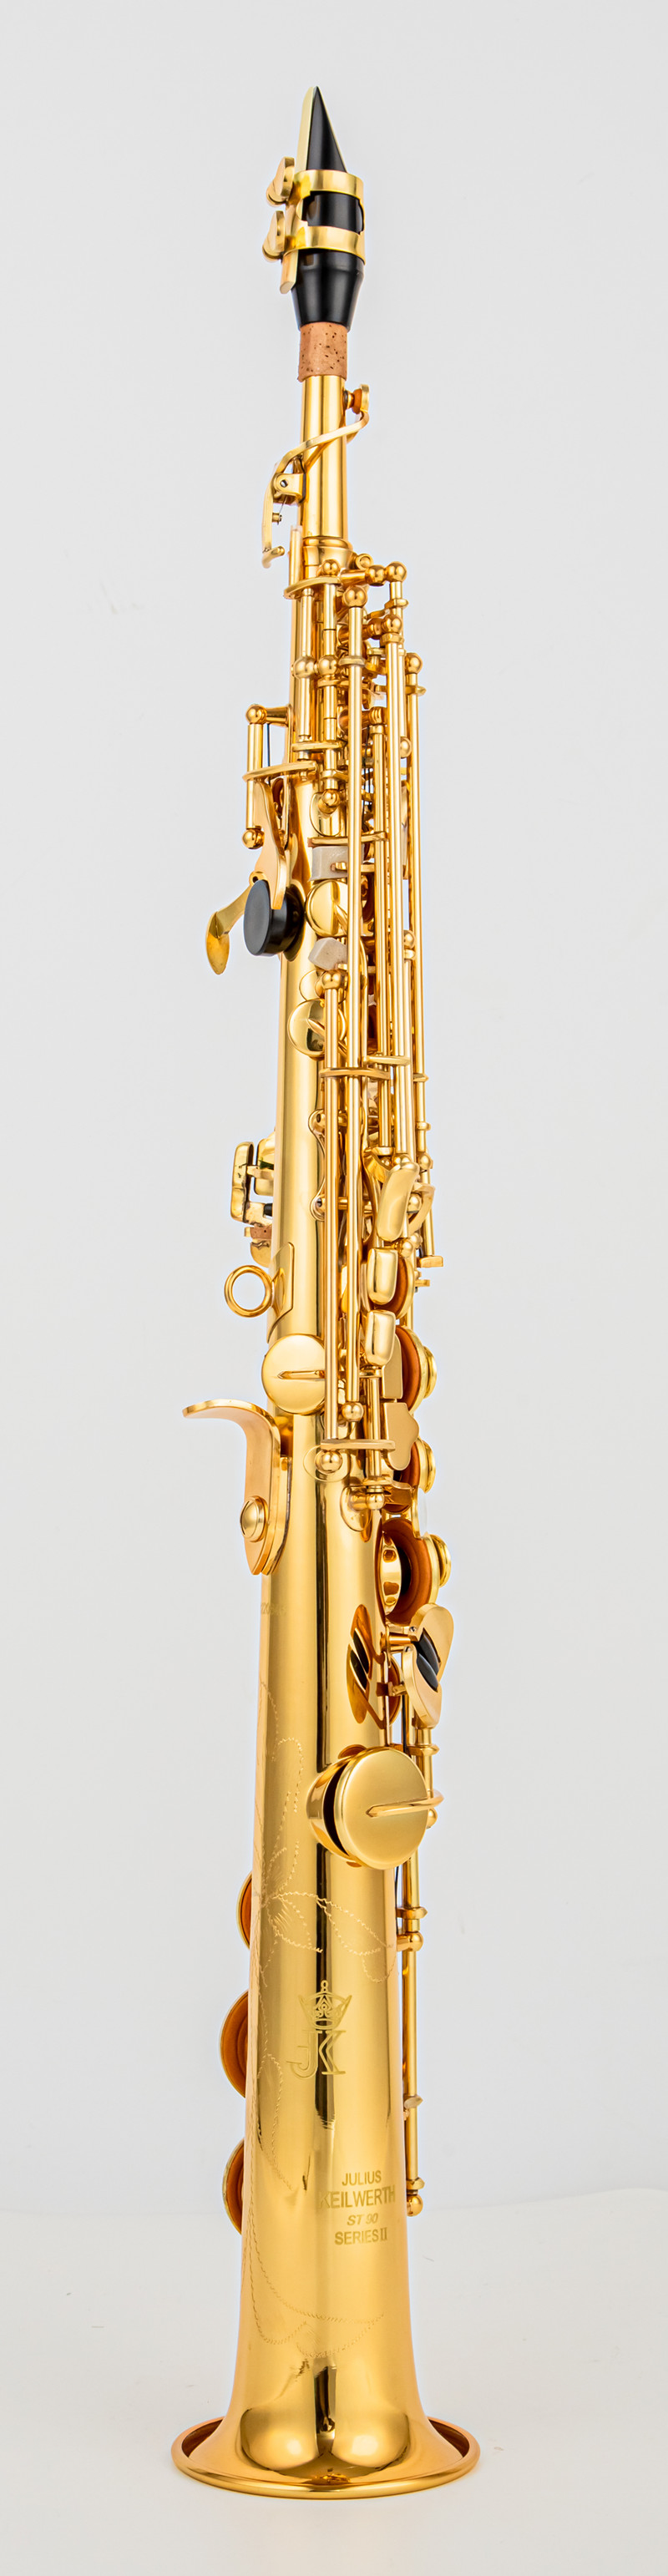 JK Keilwerth SX90II Soprano Saxophone Gold Nickel B Flat Soprano مباشرة مع رقبتين ، علبة ، لسان حال ، القفازات ، القصب